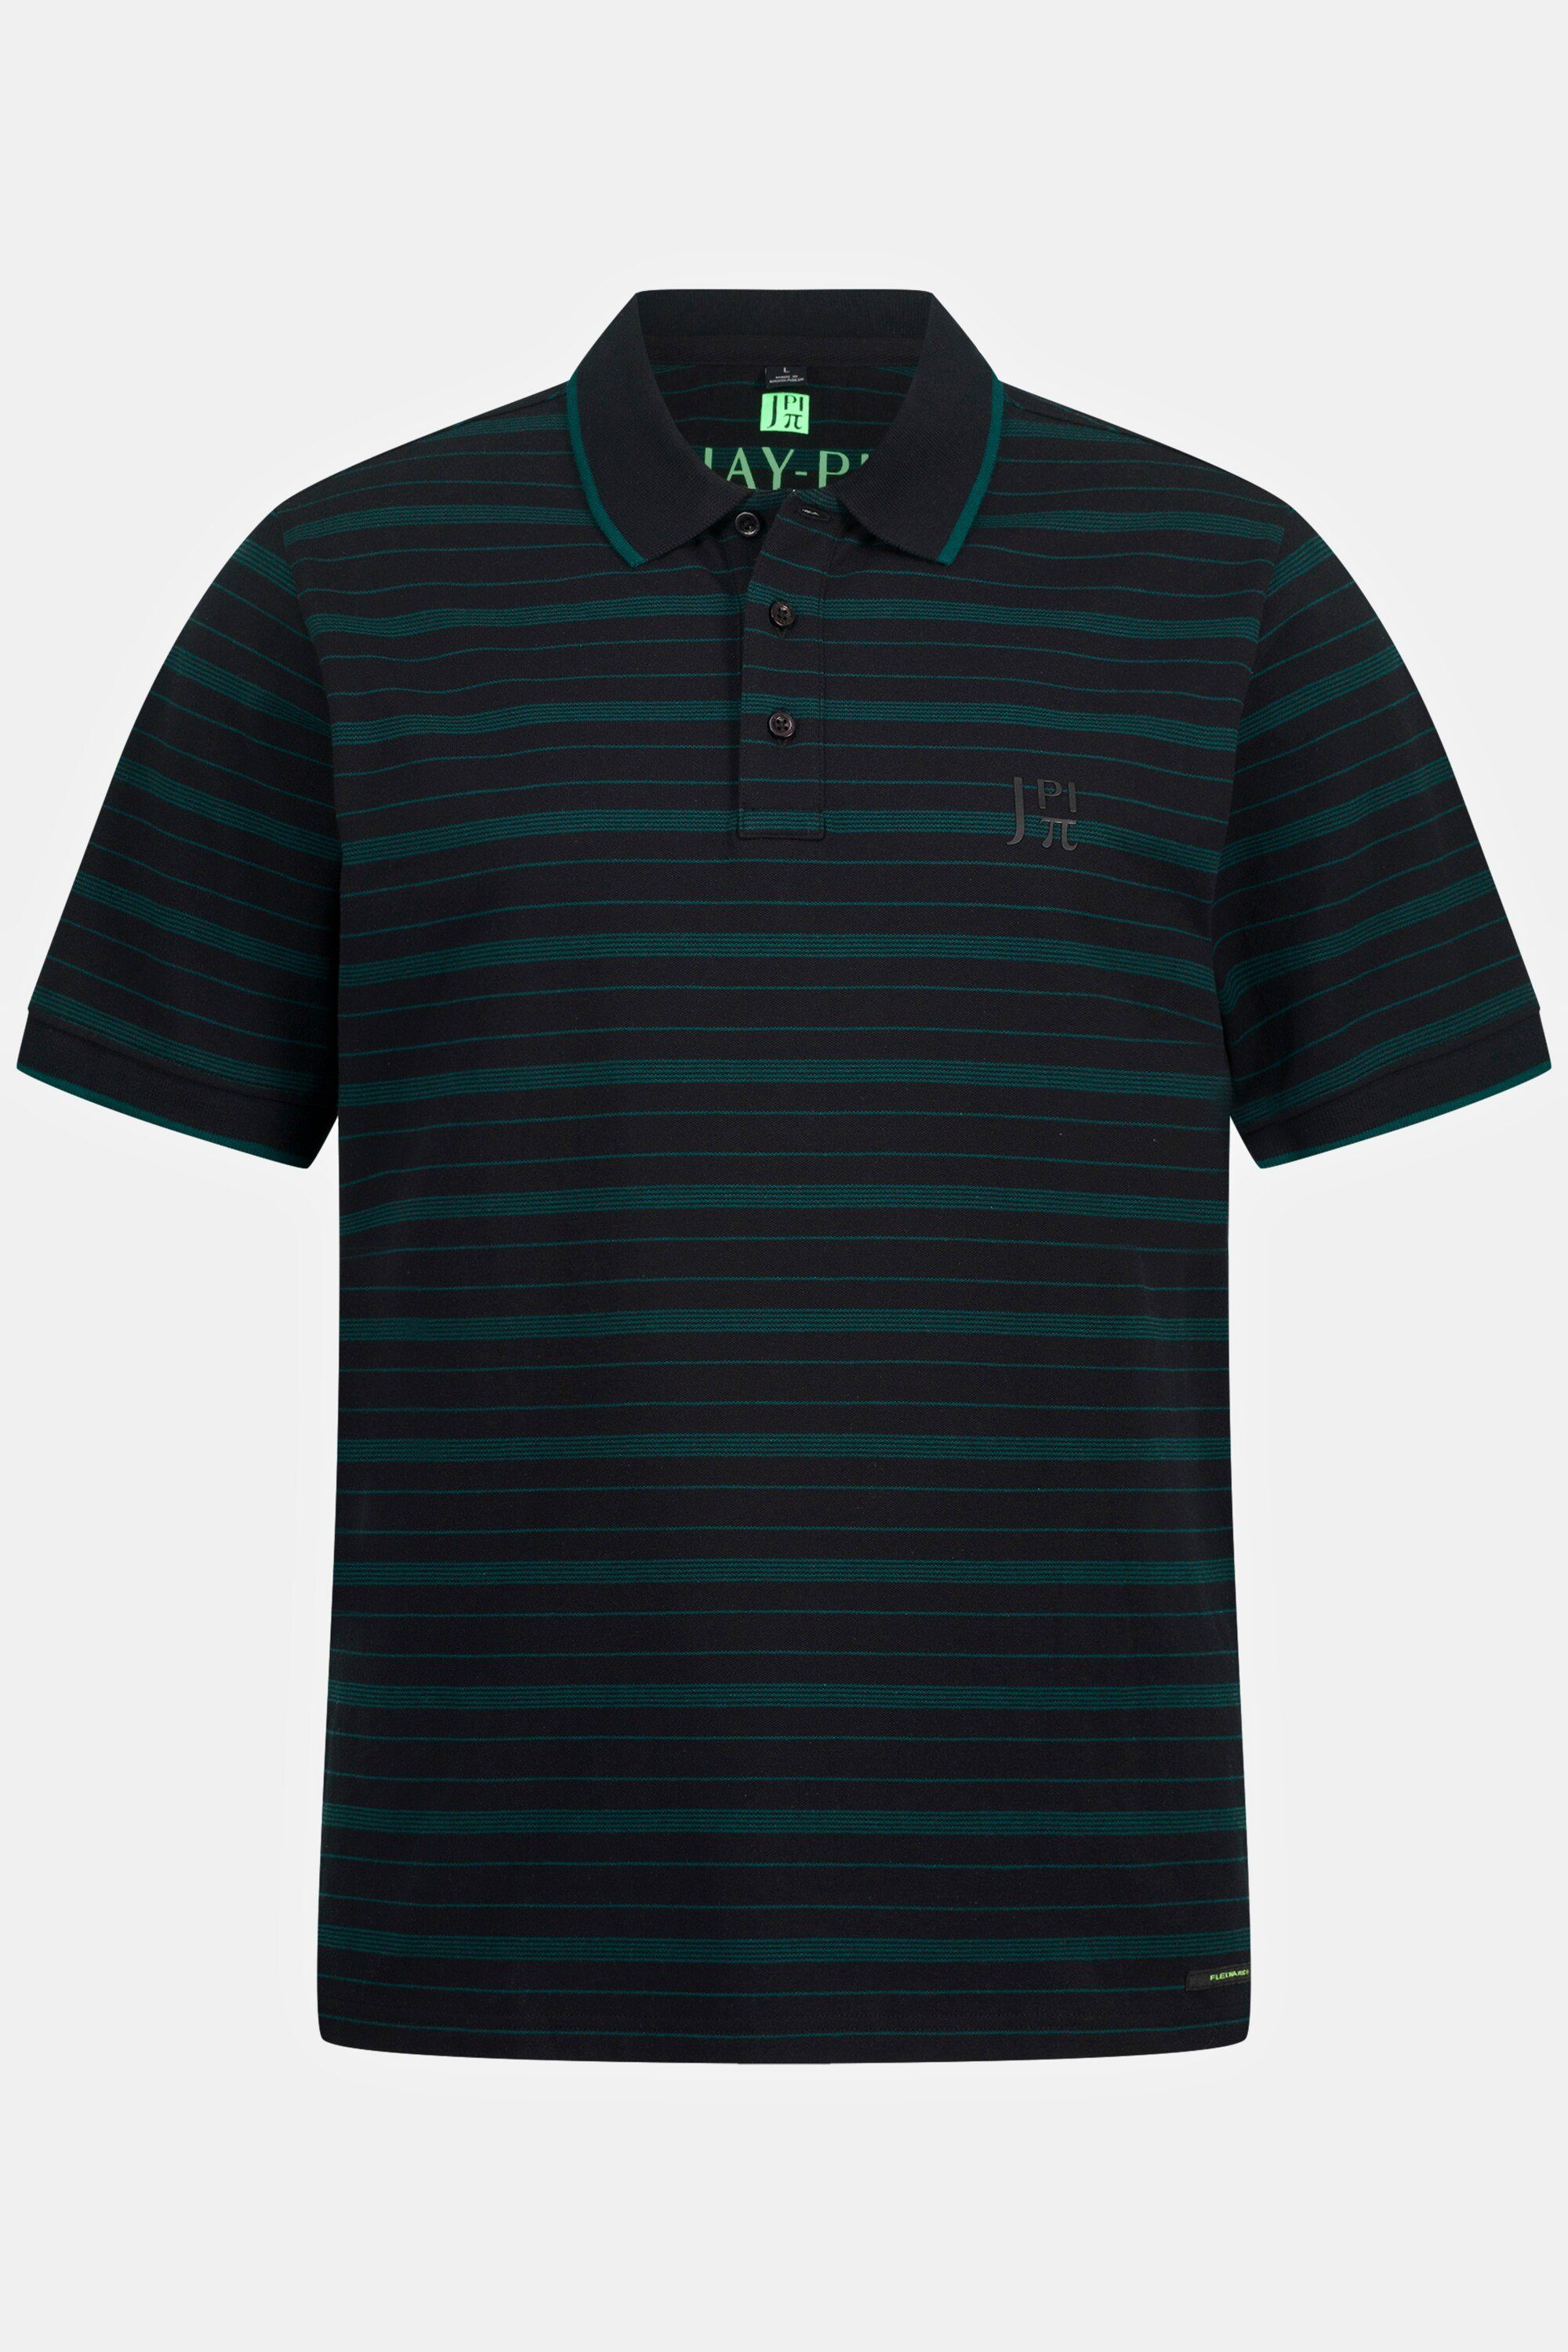 JP1880 FLEXNAMIC® Halbarm Ringel Poloshirt Poloshirt Golf